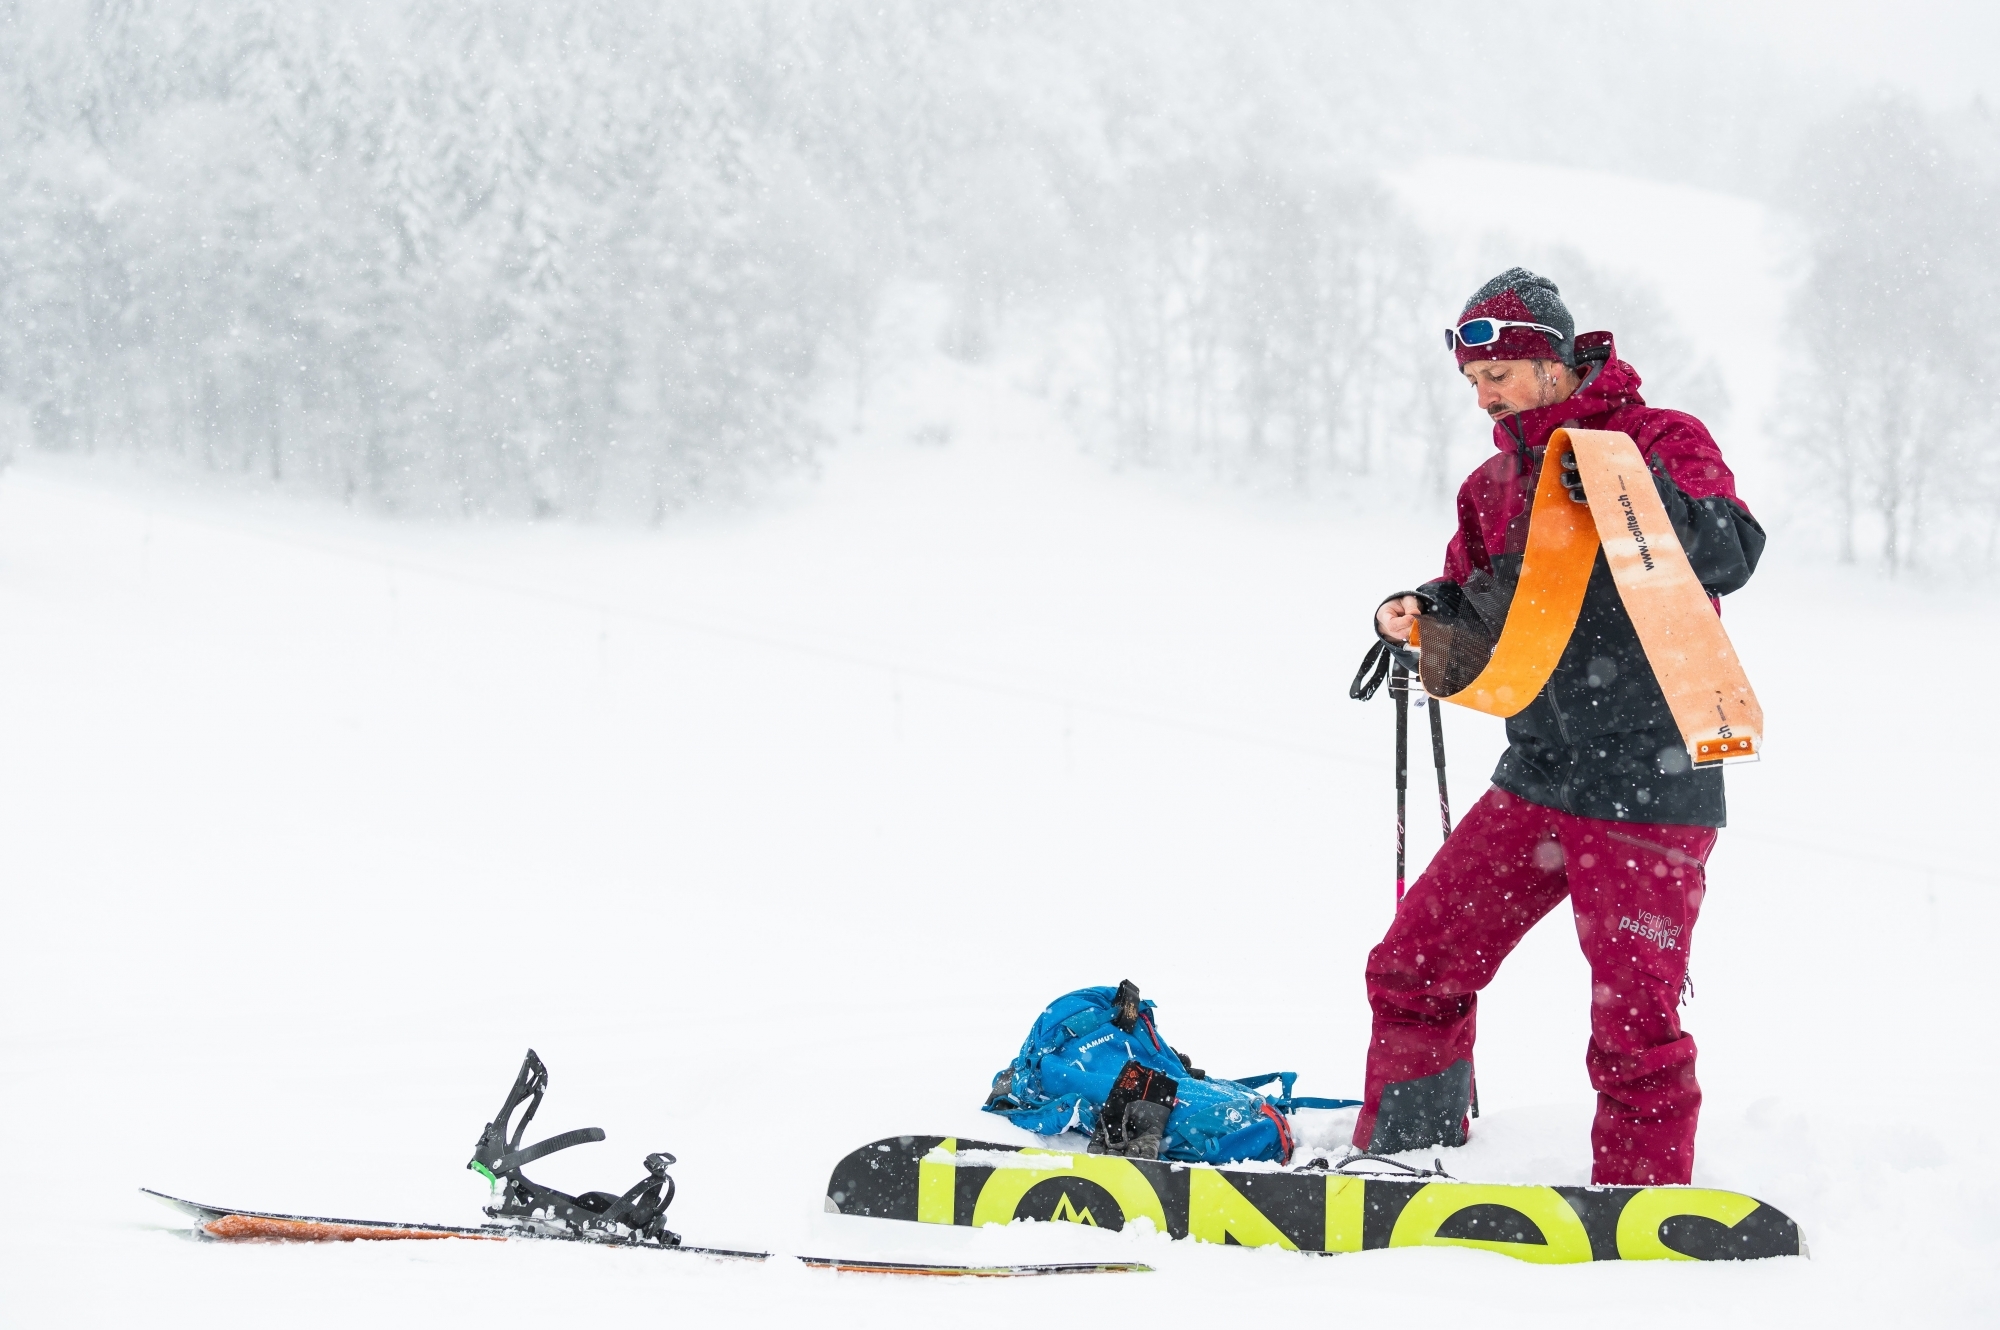 Vincent Cassi, pratiquant de splitboard, assemble ses deux skis pour former un snowboard.